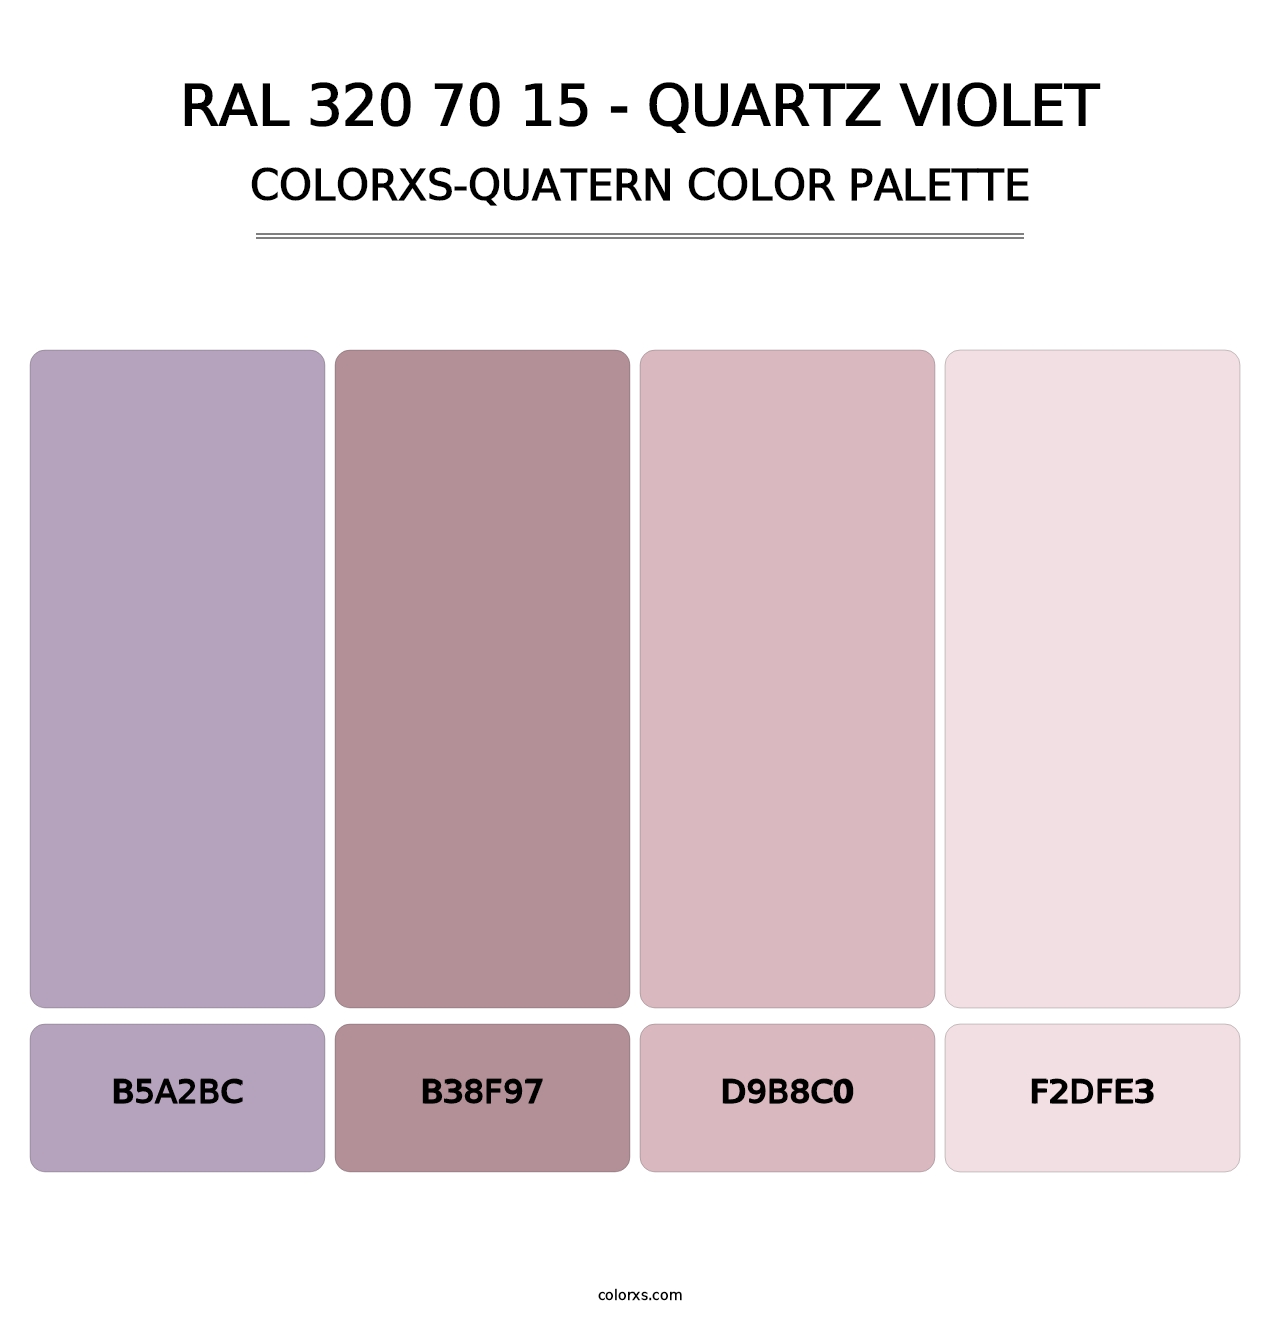 RAL 320 70 15 - Quartz Violet - Colorxs Quatern Palette